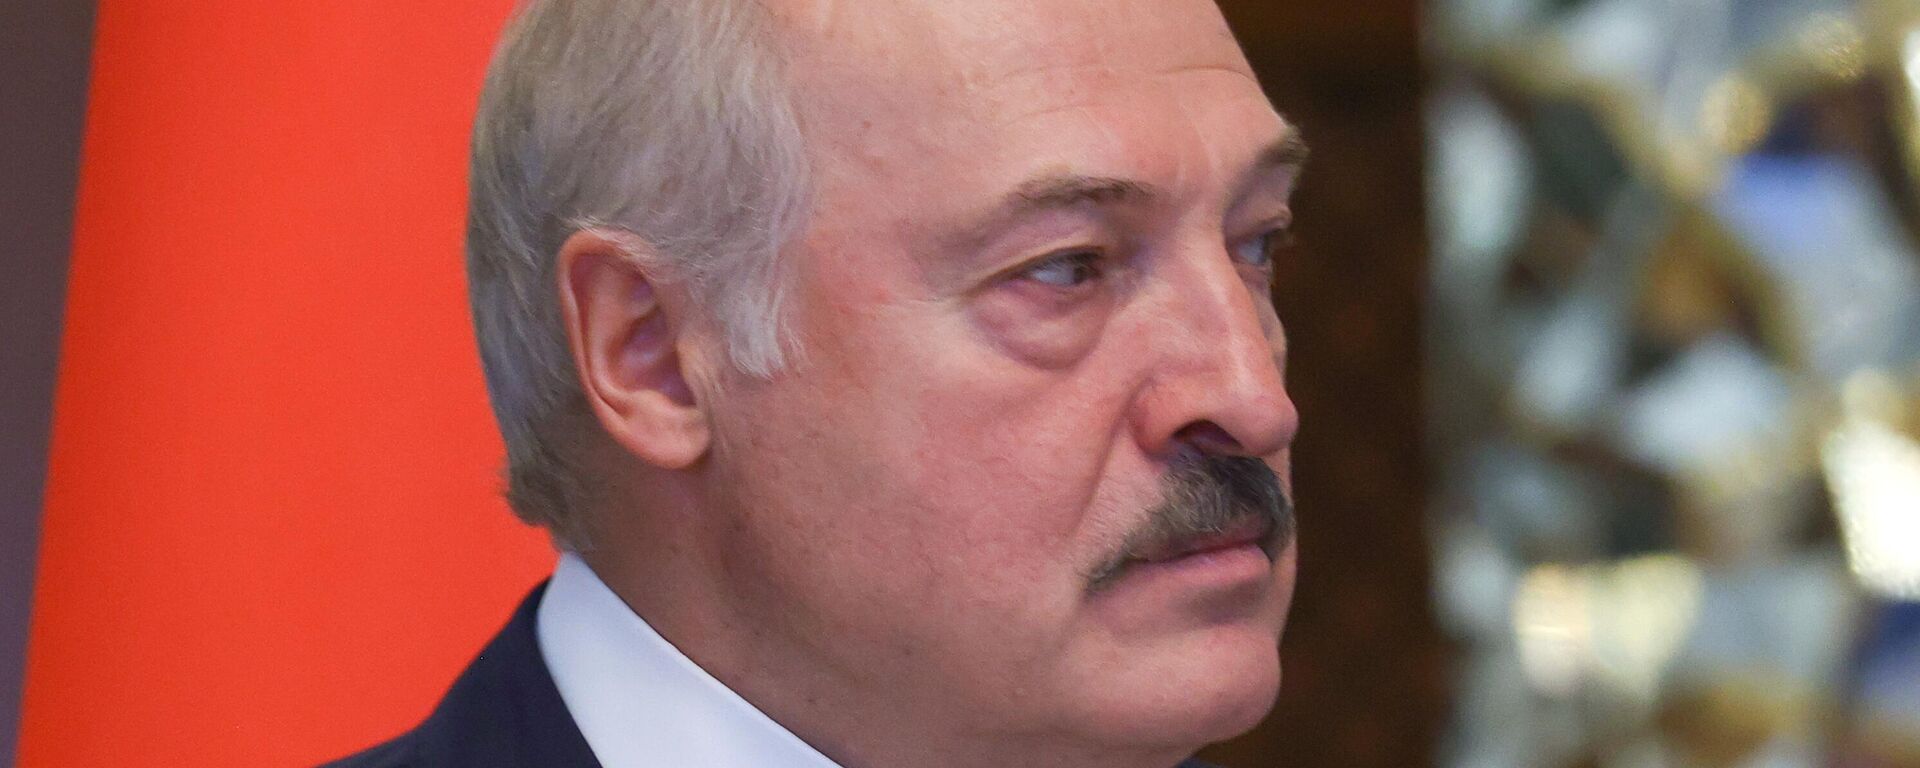 Alexandr Lukashenko, presidente de Bielorrusia - Sputnik Mundo, 1920, 18.11.2021